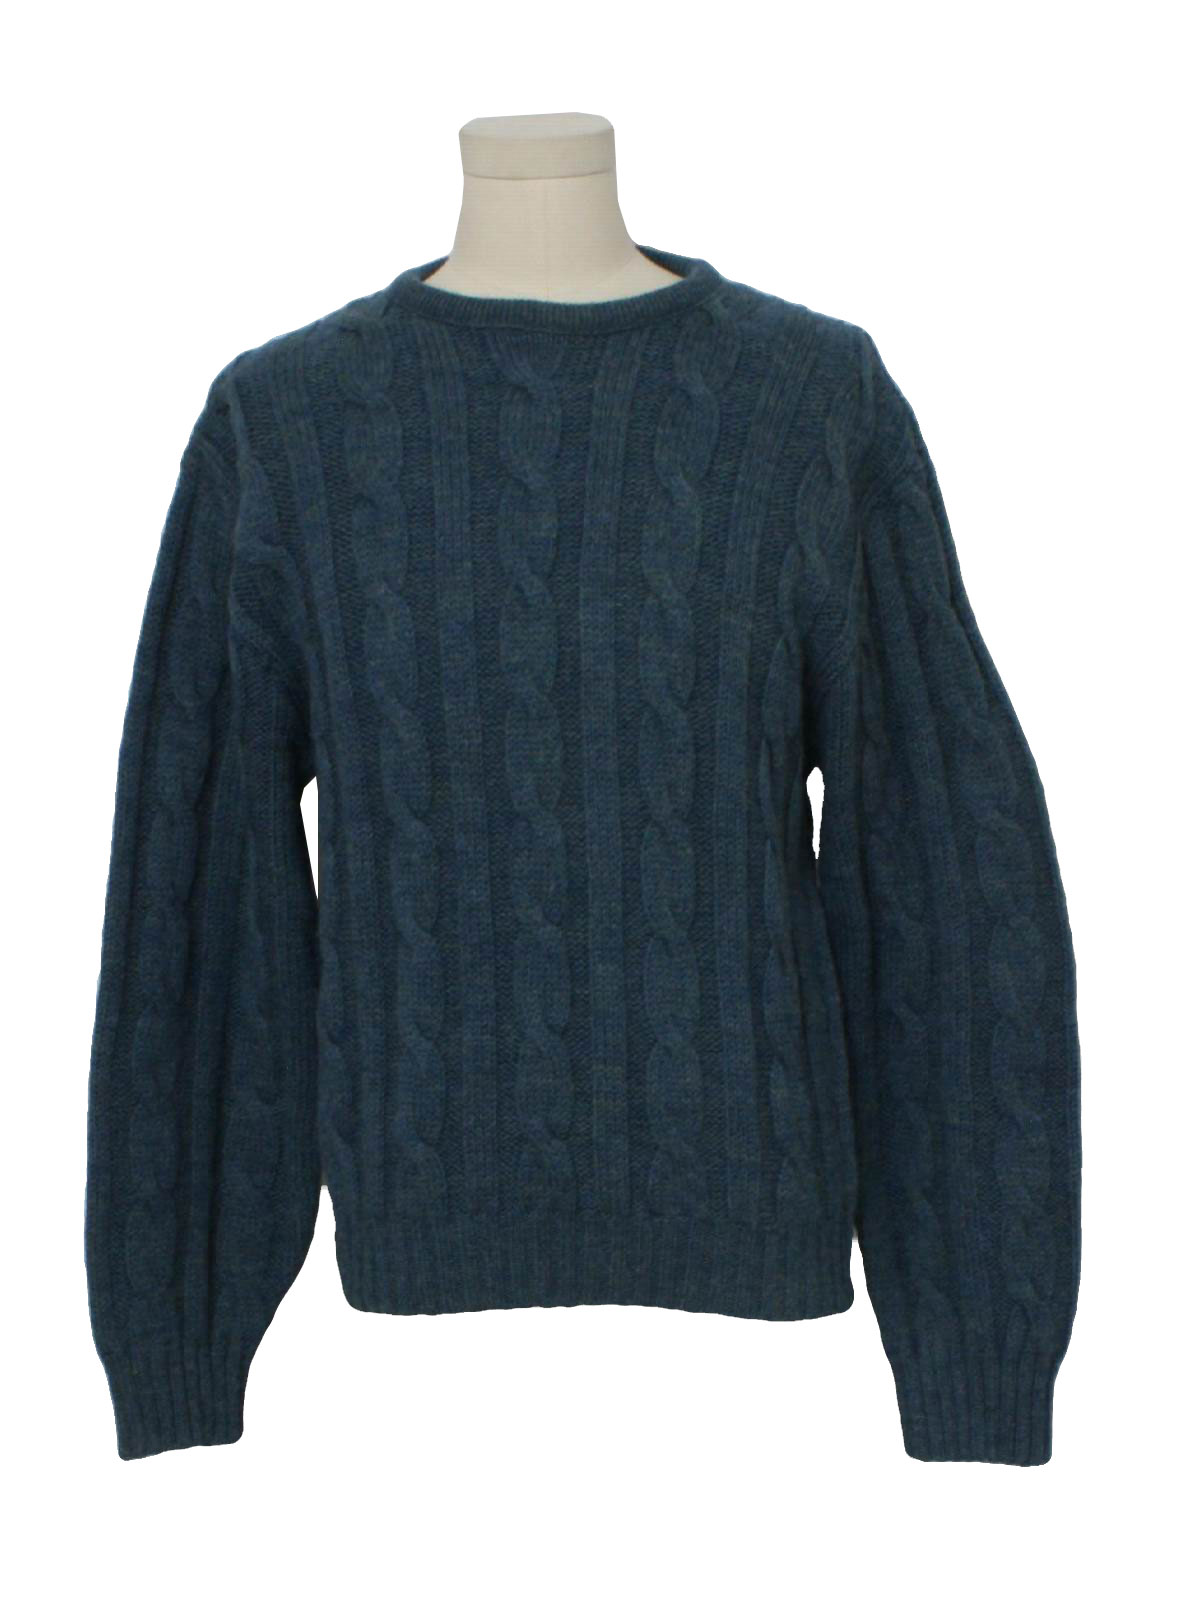 Seventies Vintage Sweater: 70s -Pendelton Woolen Mills- Mens heather ...